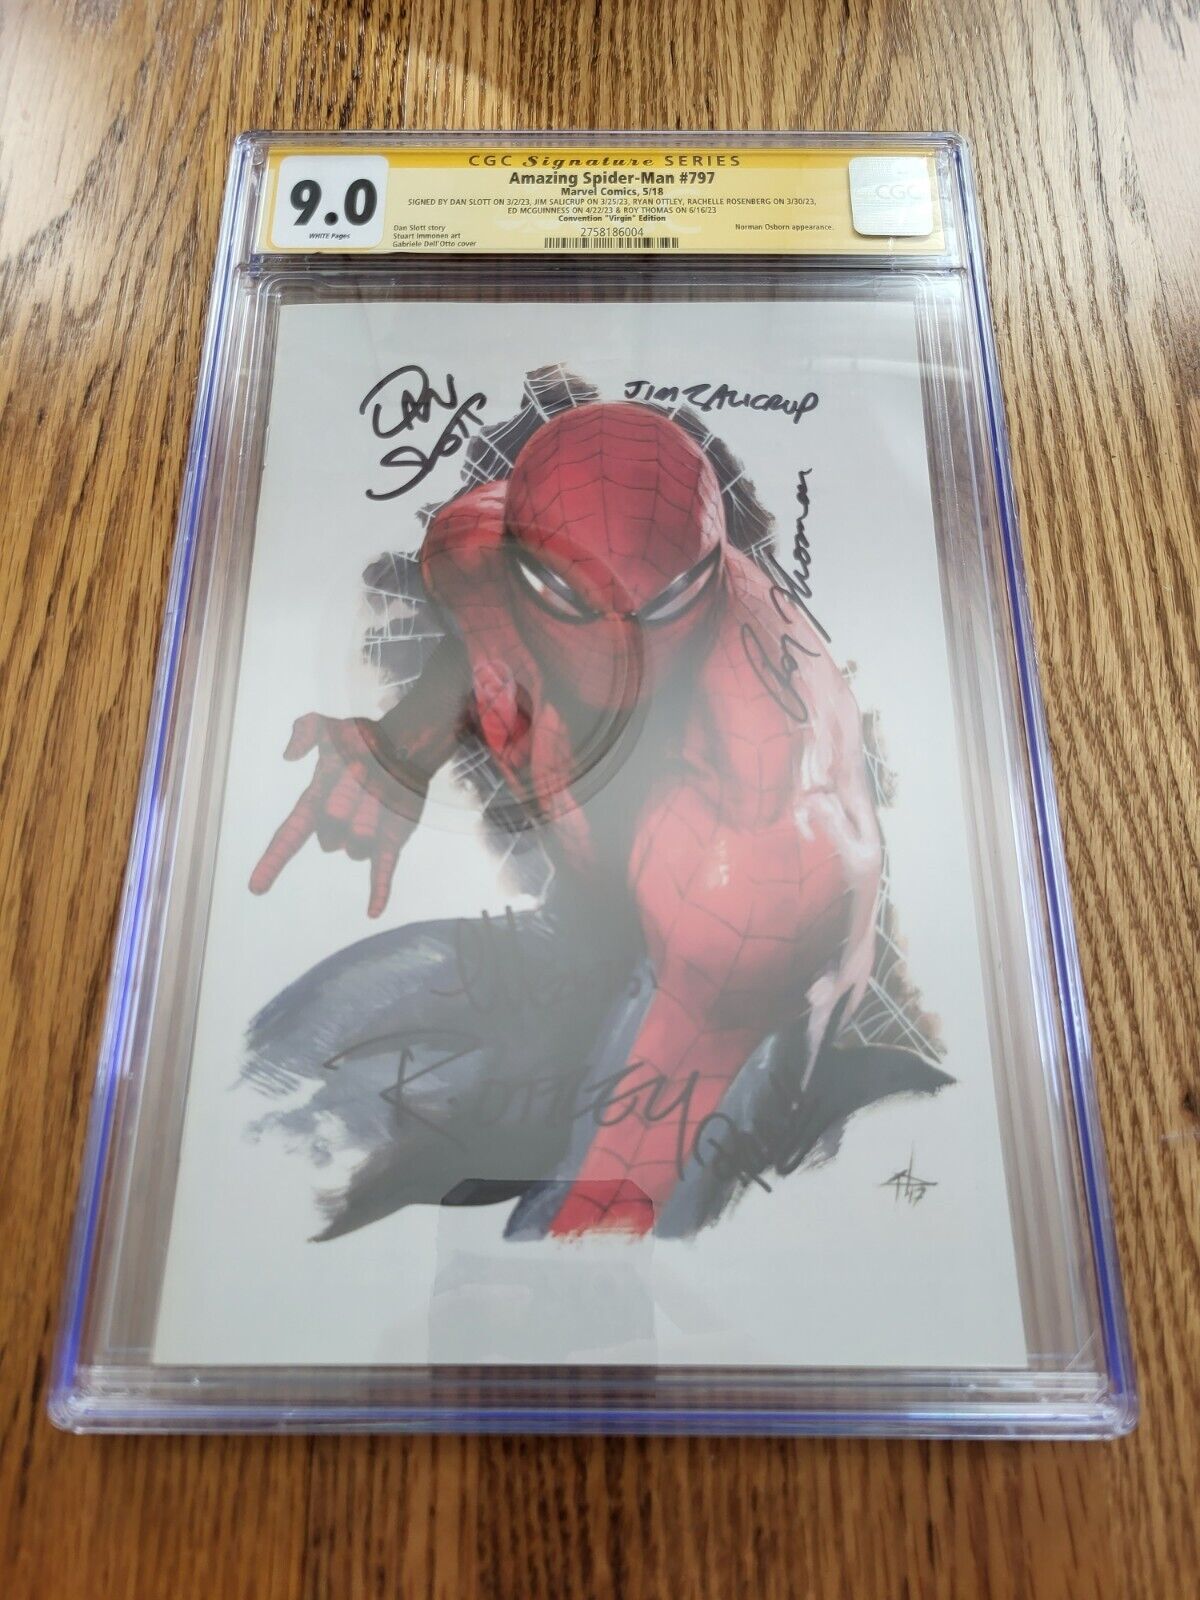 Marvel Amazing Spider-Man #797 - 9.0 CGC w/ 6 Signatures - Del'Otto Virgin